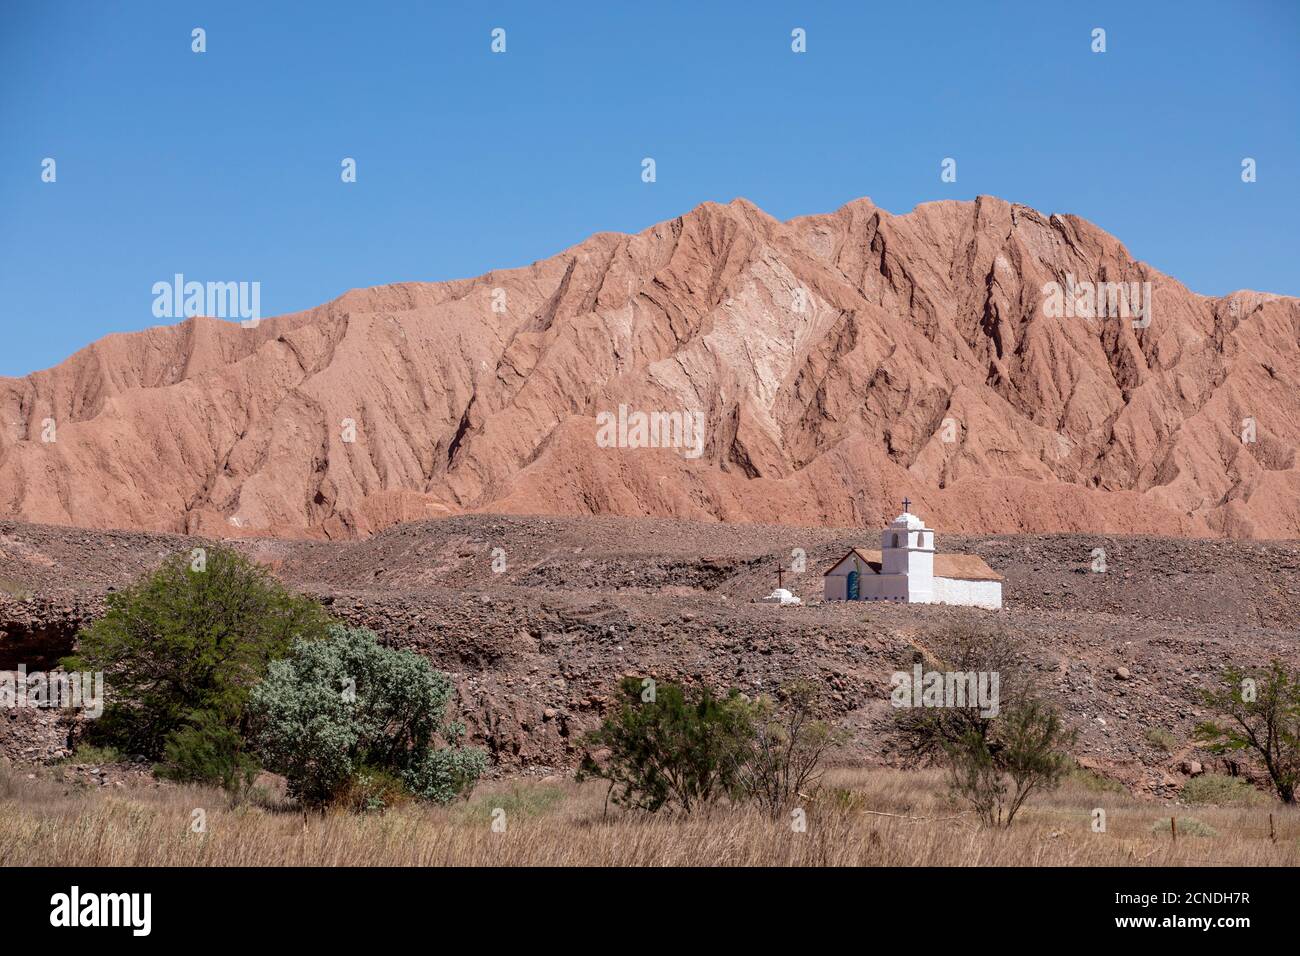 The small Capilla de San Isidro, Catarpe, Antofagasta Region, Chile Stock Photo